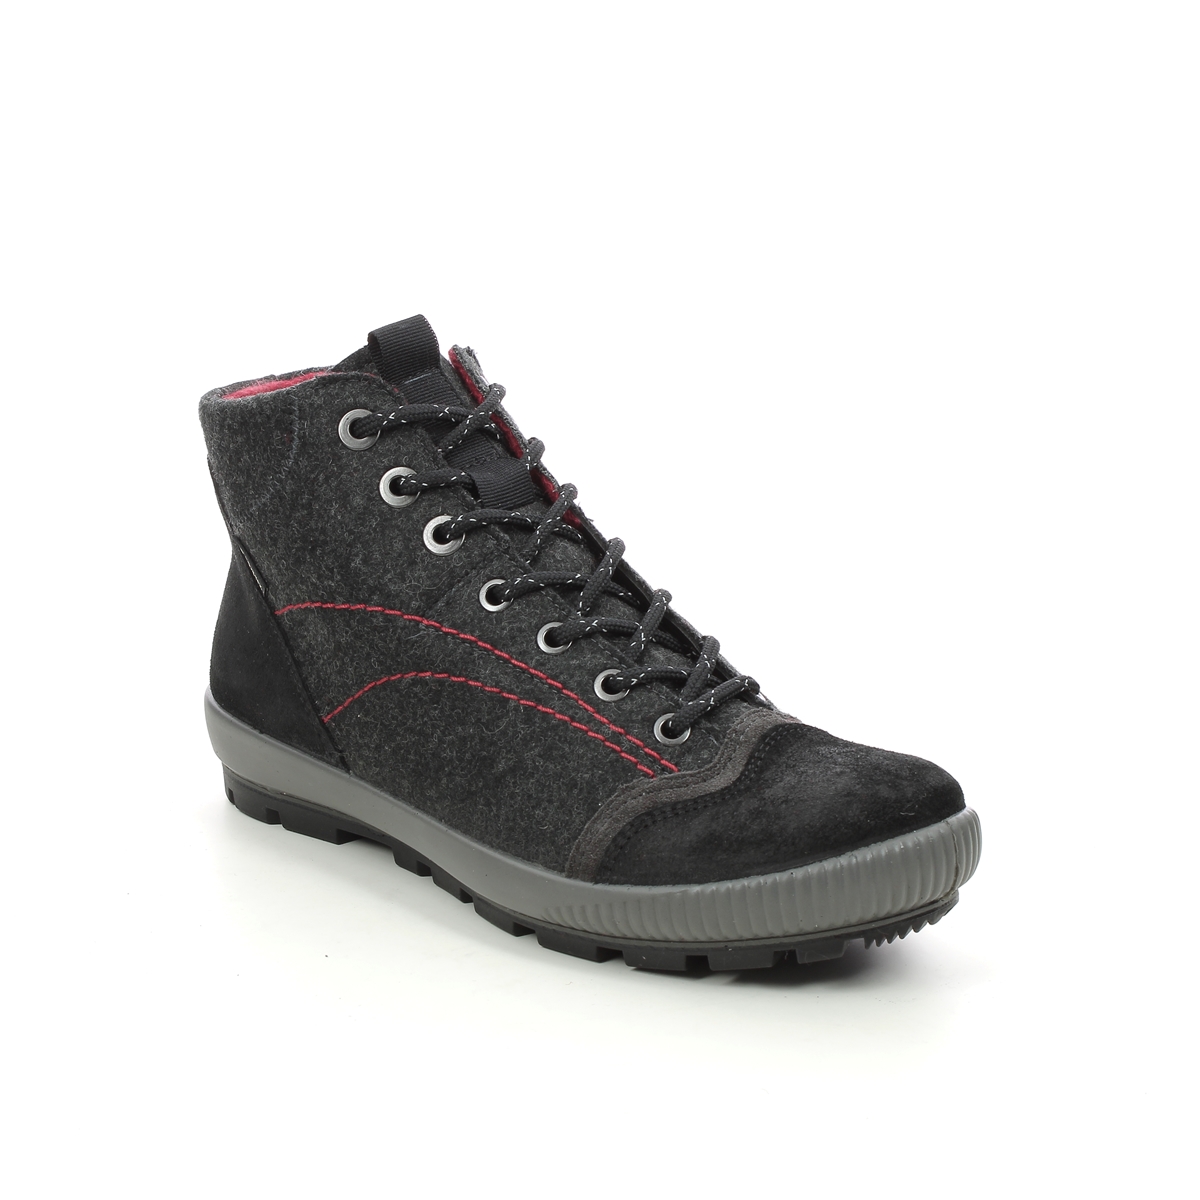 Legero Tanaro Gtx Trek Black Suede Womens Walking Boots 2000123-0000 In Size 4.5 In Plain Black Suede